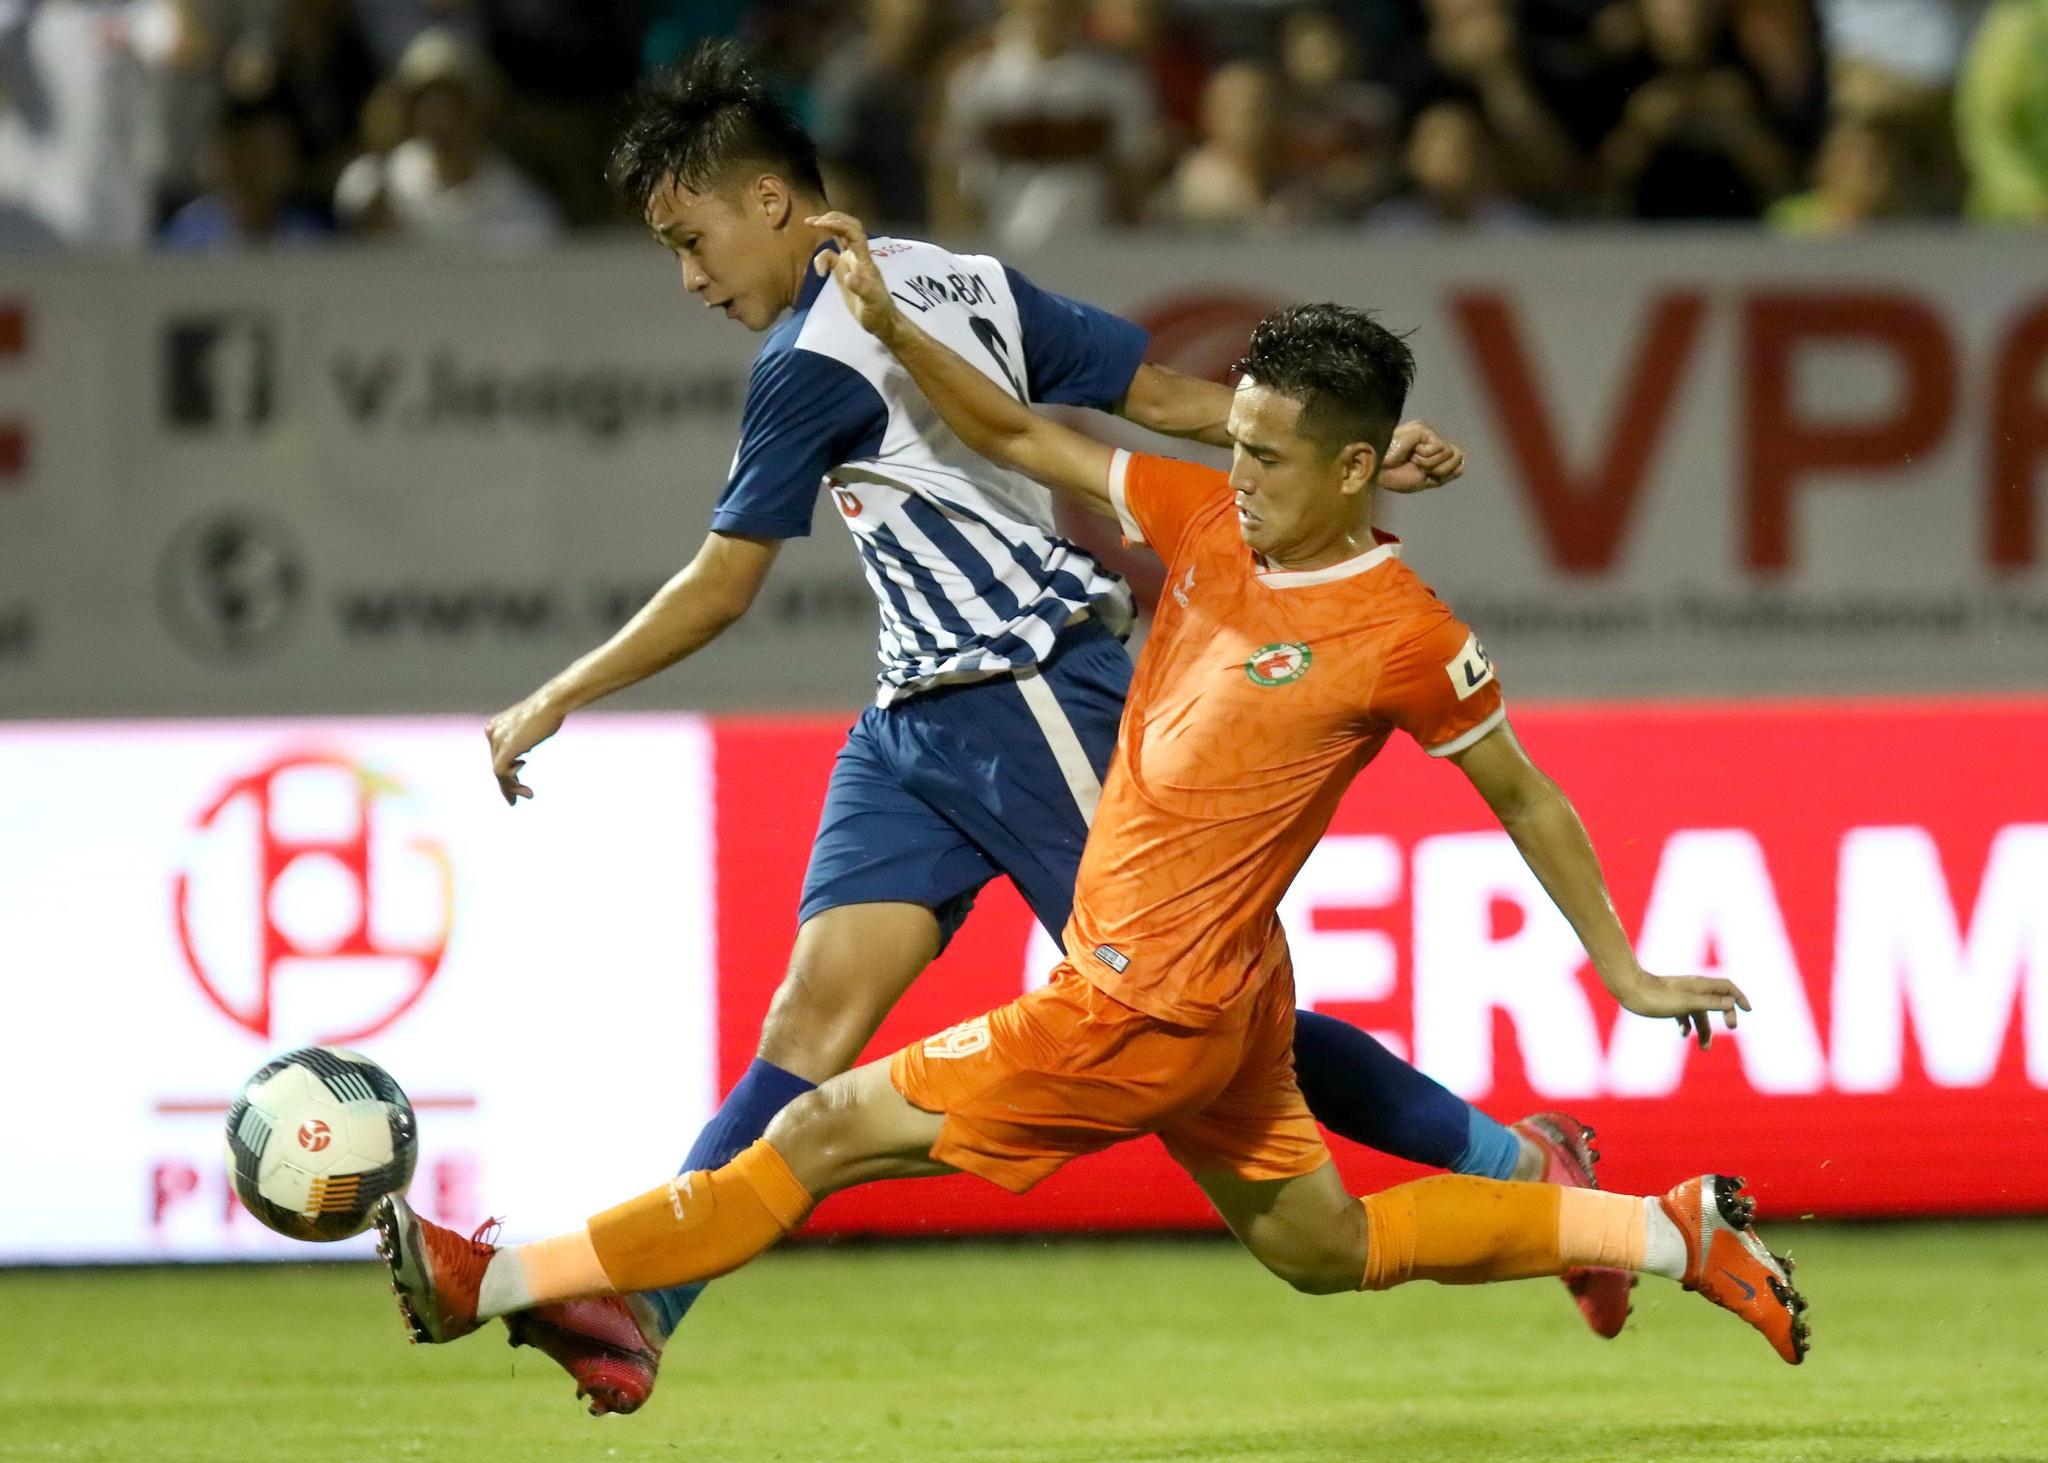 Vòng 9 giải bóng đá hạng nhất 2020: 3 trận 'chung kết' của Bình Định - ảnh 1